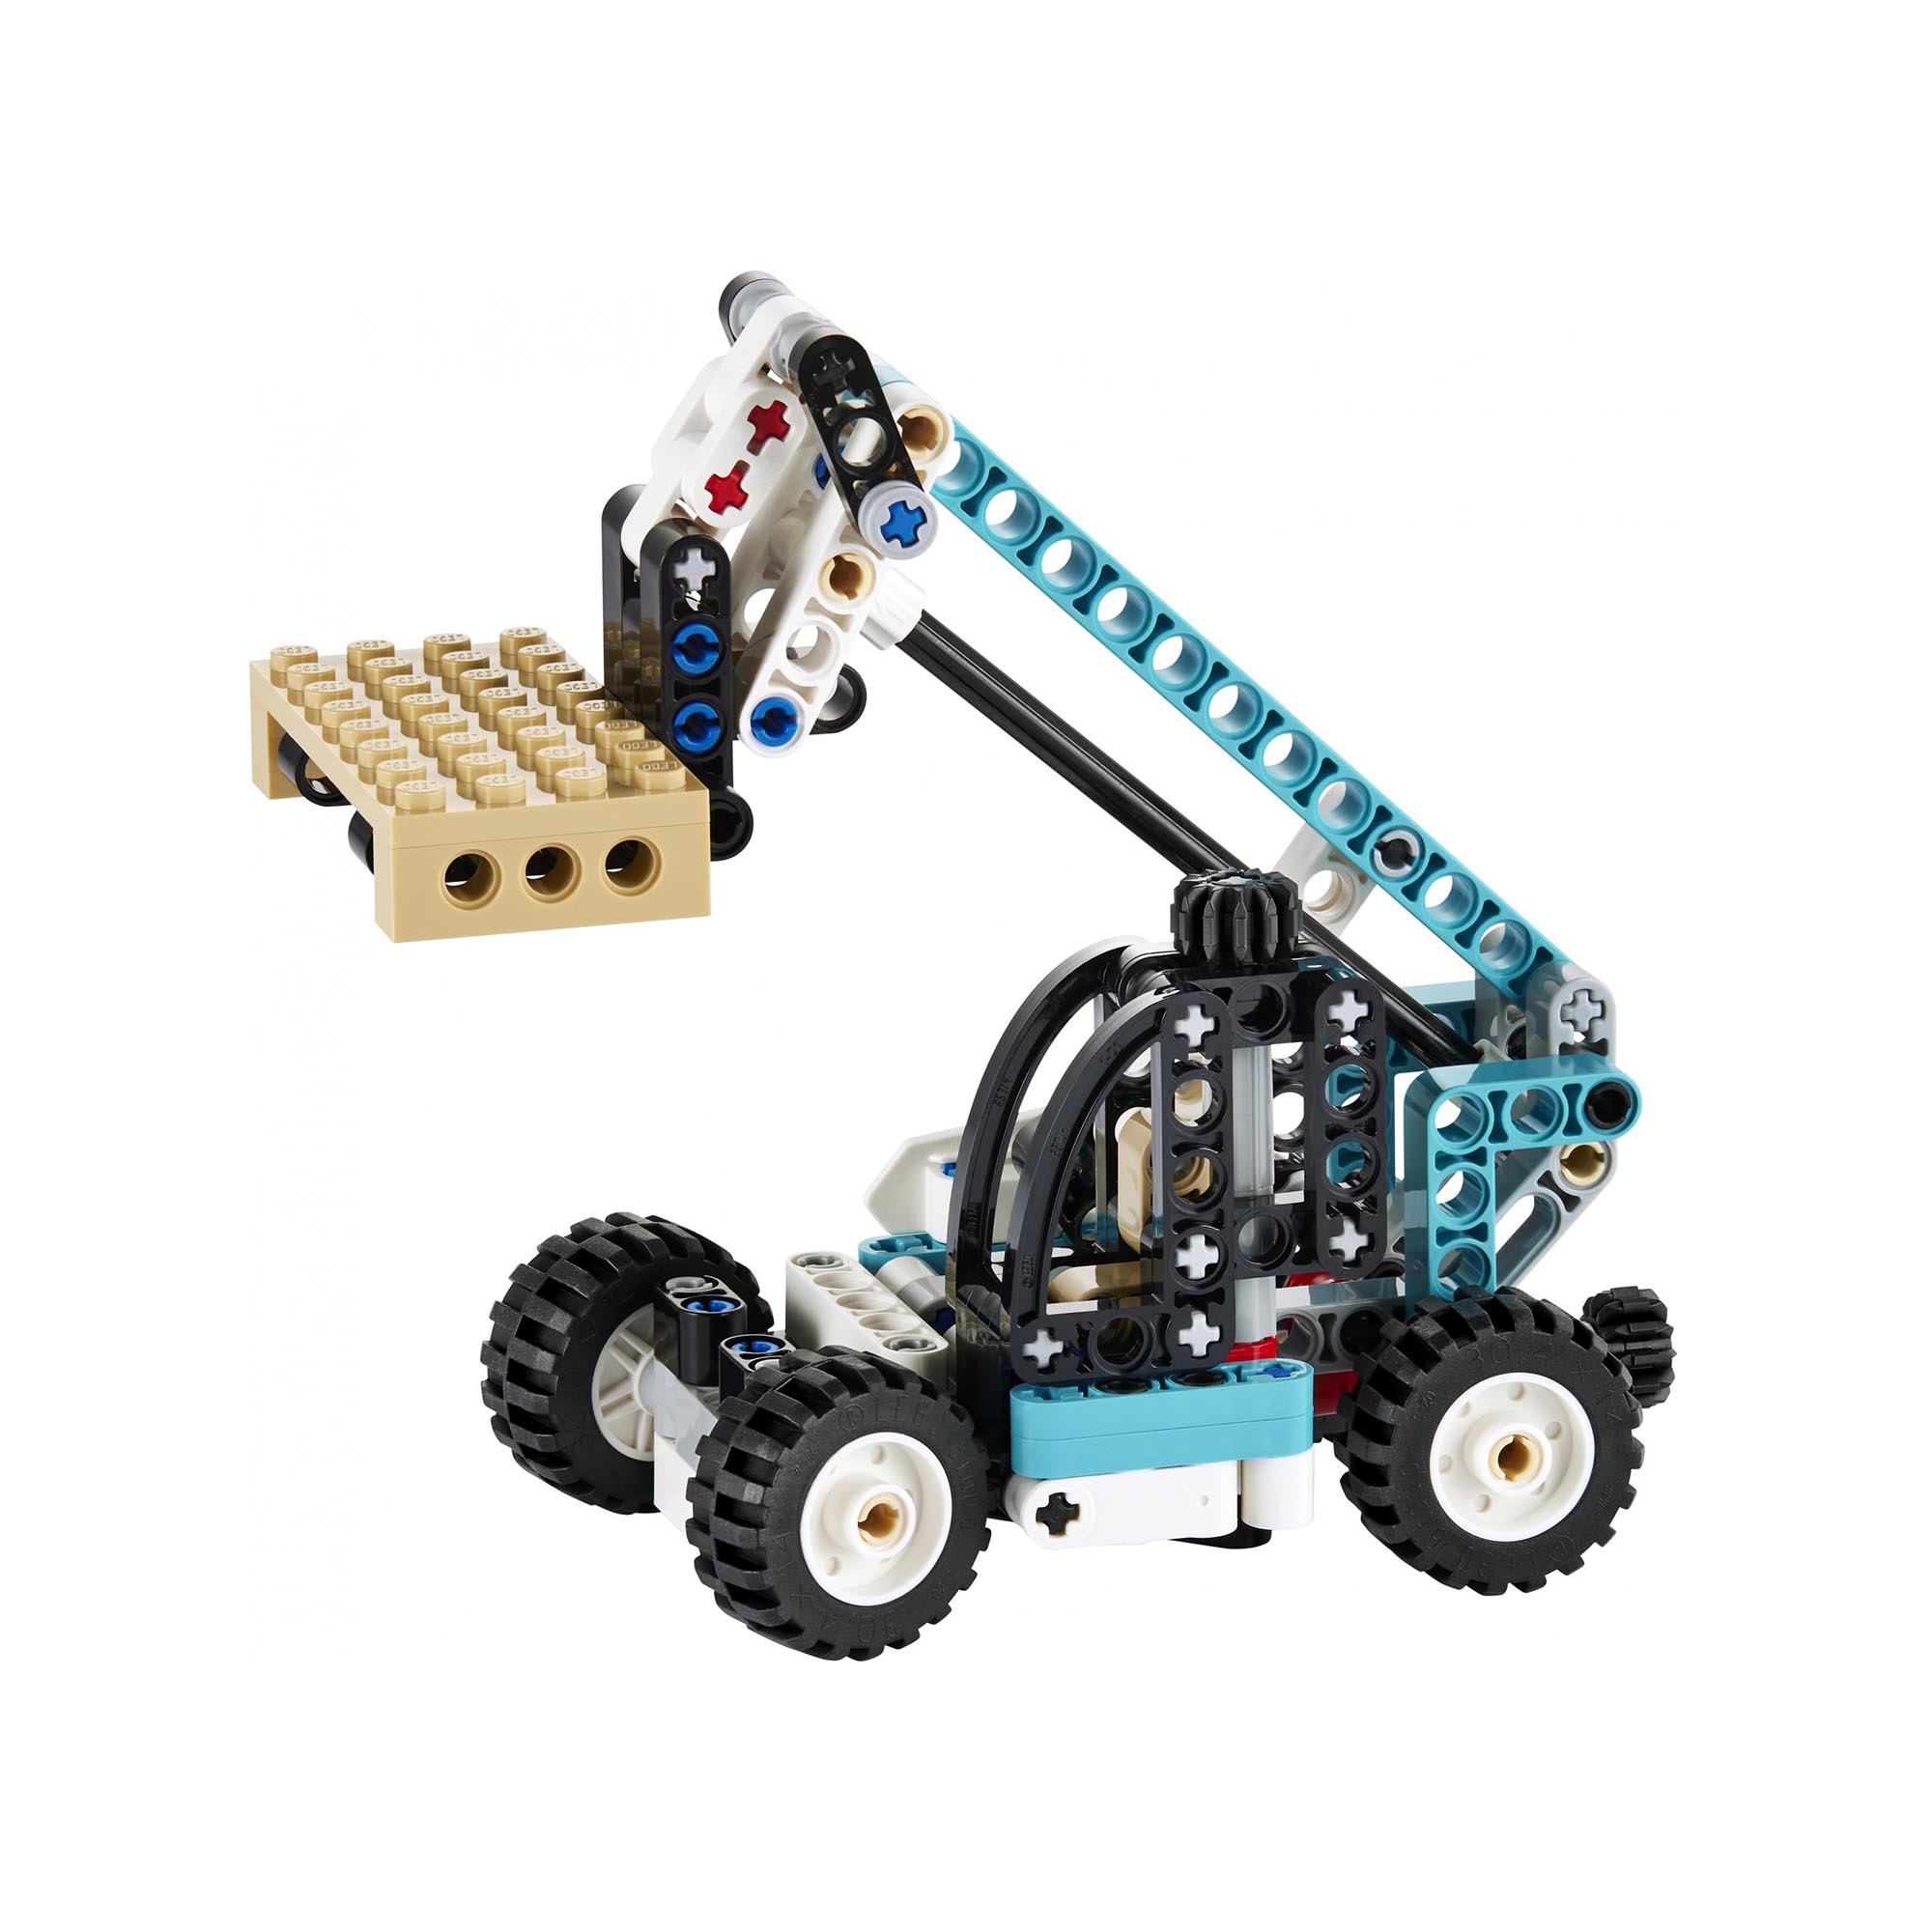 LEGO Technic Sollevatore Telescopico, Set 2in1 Camion Giocattolo e Carrello Elev 42133, , large